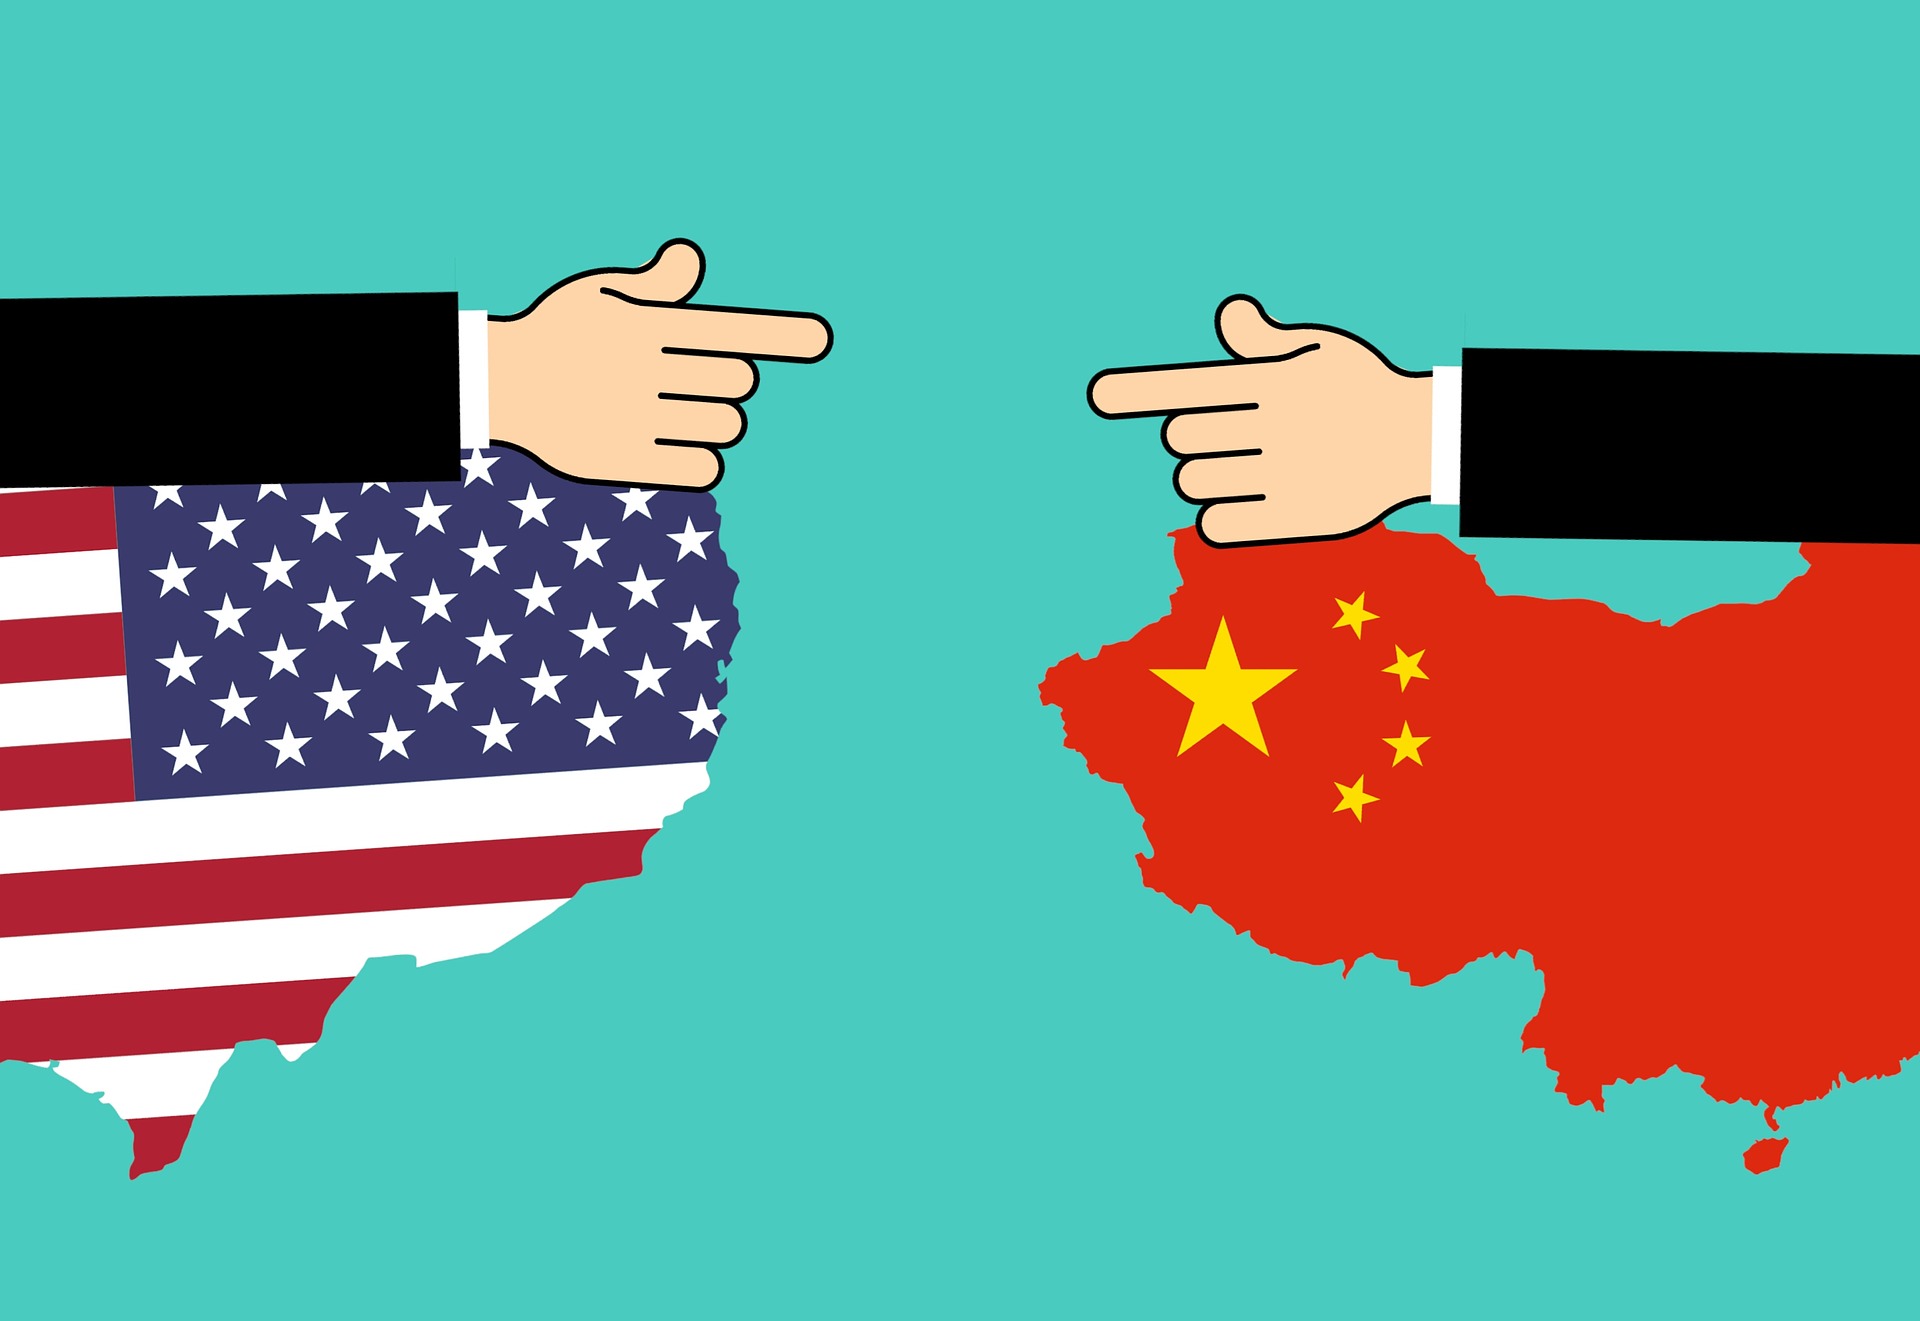 Commercio. Accordo Cina-USA: chi vince e chi abbozza? Qualche spunto di riflessione...